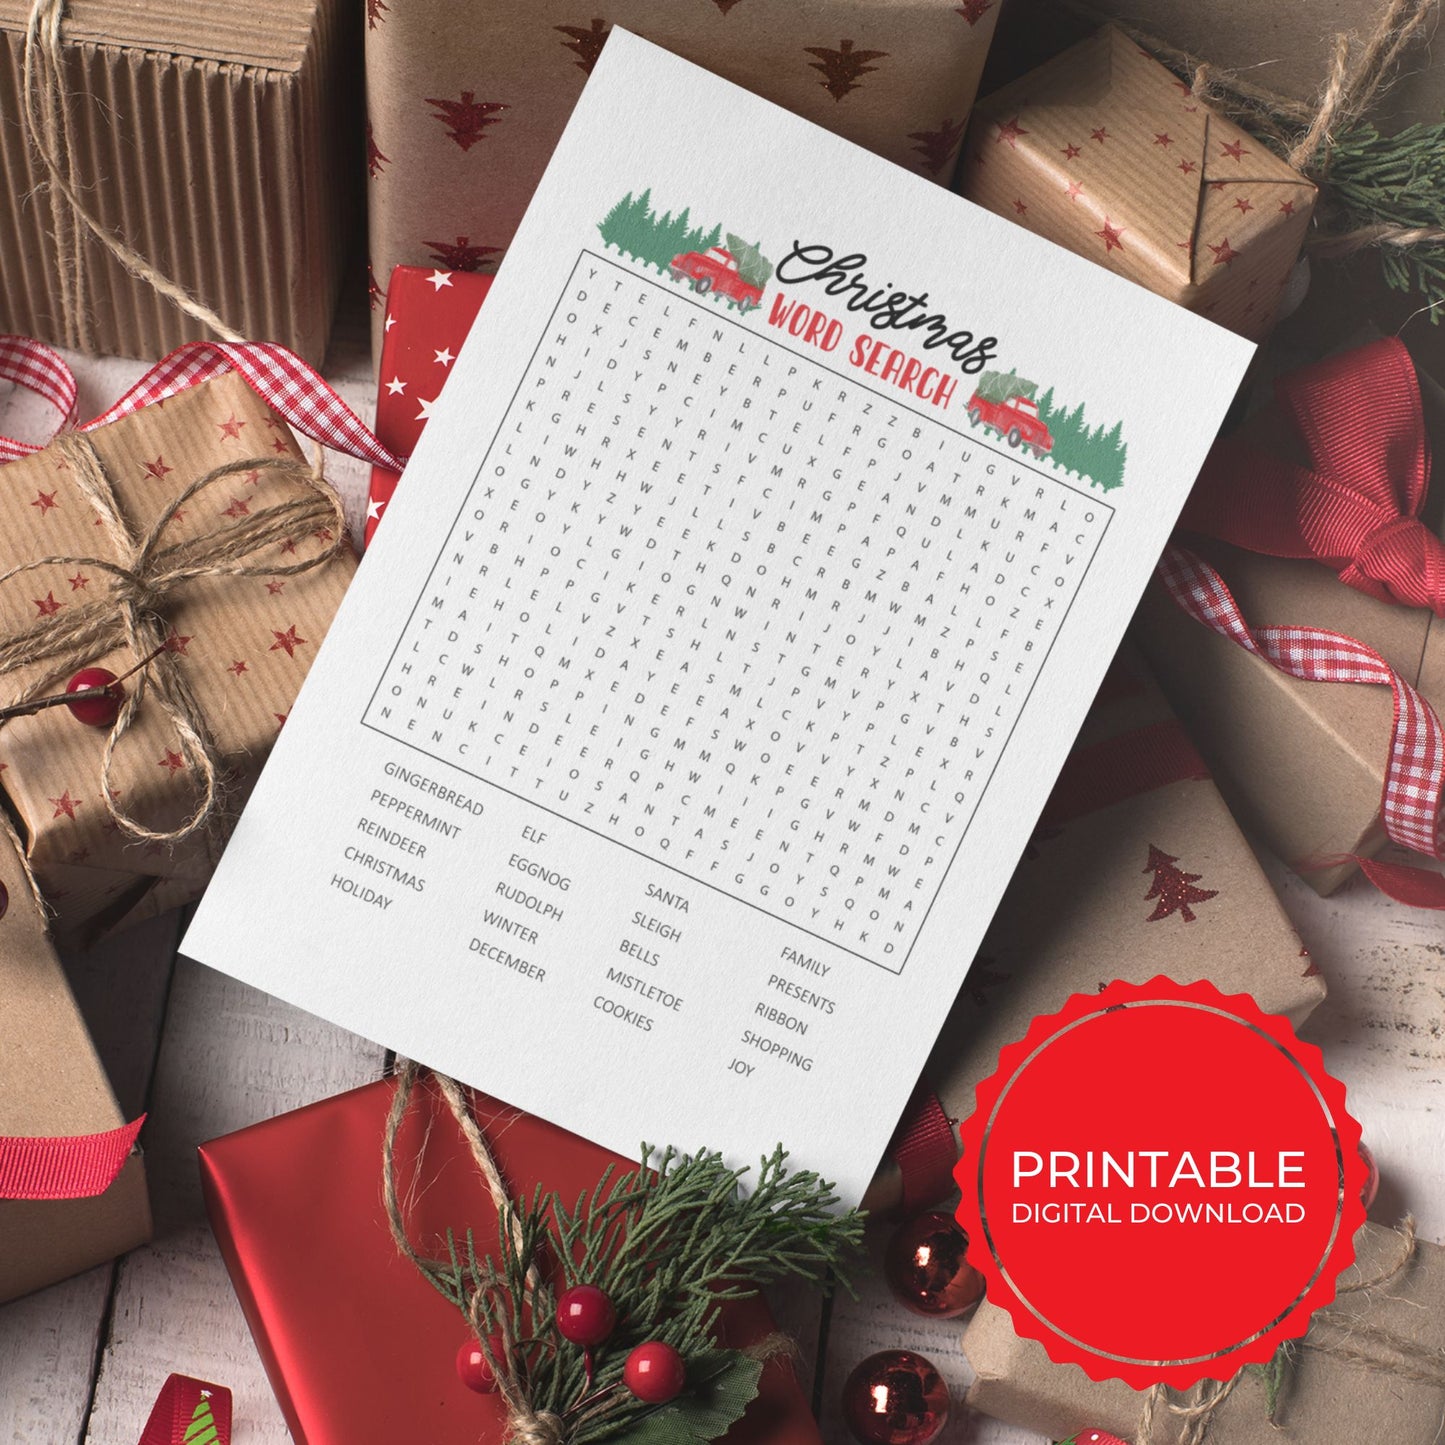 Printable Family Christmas Word Search Game